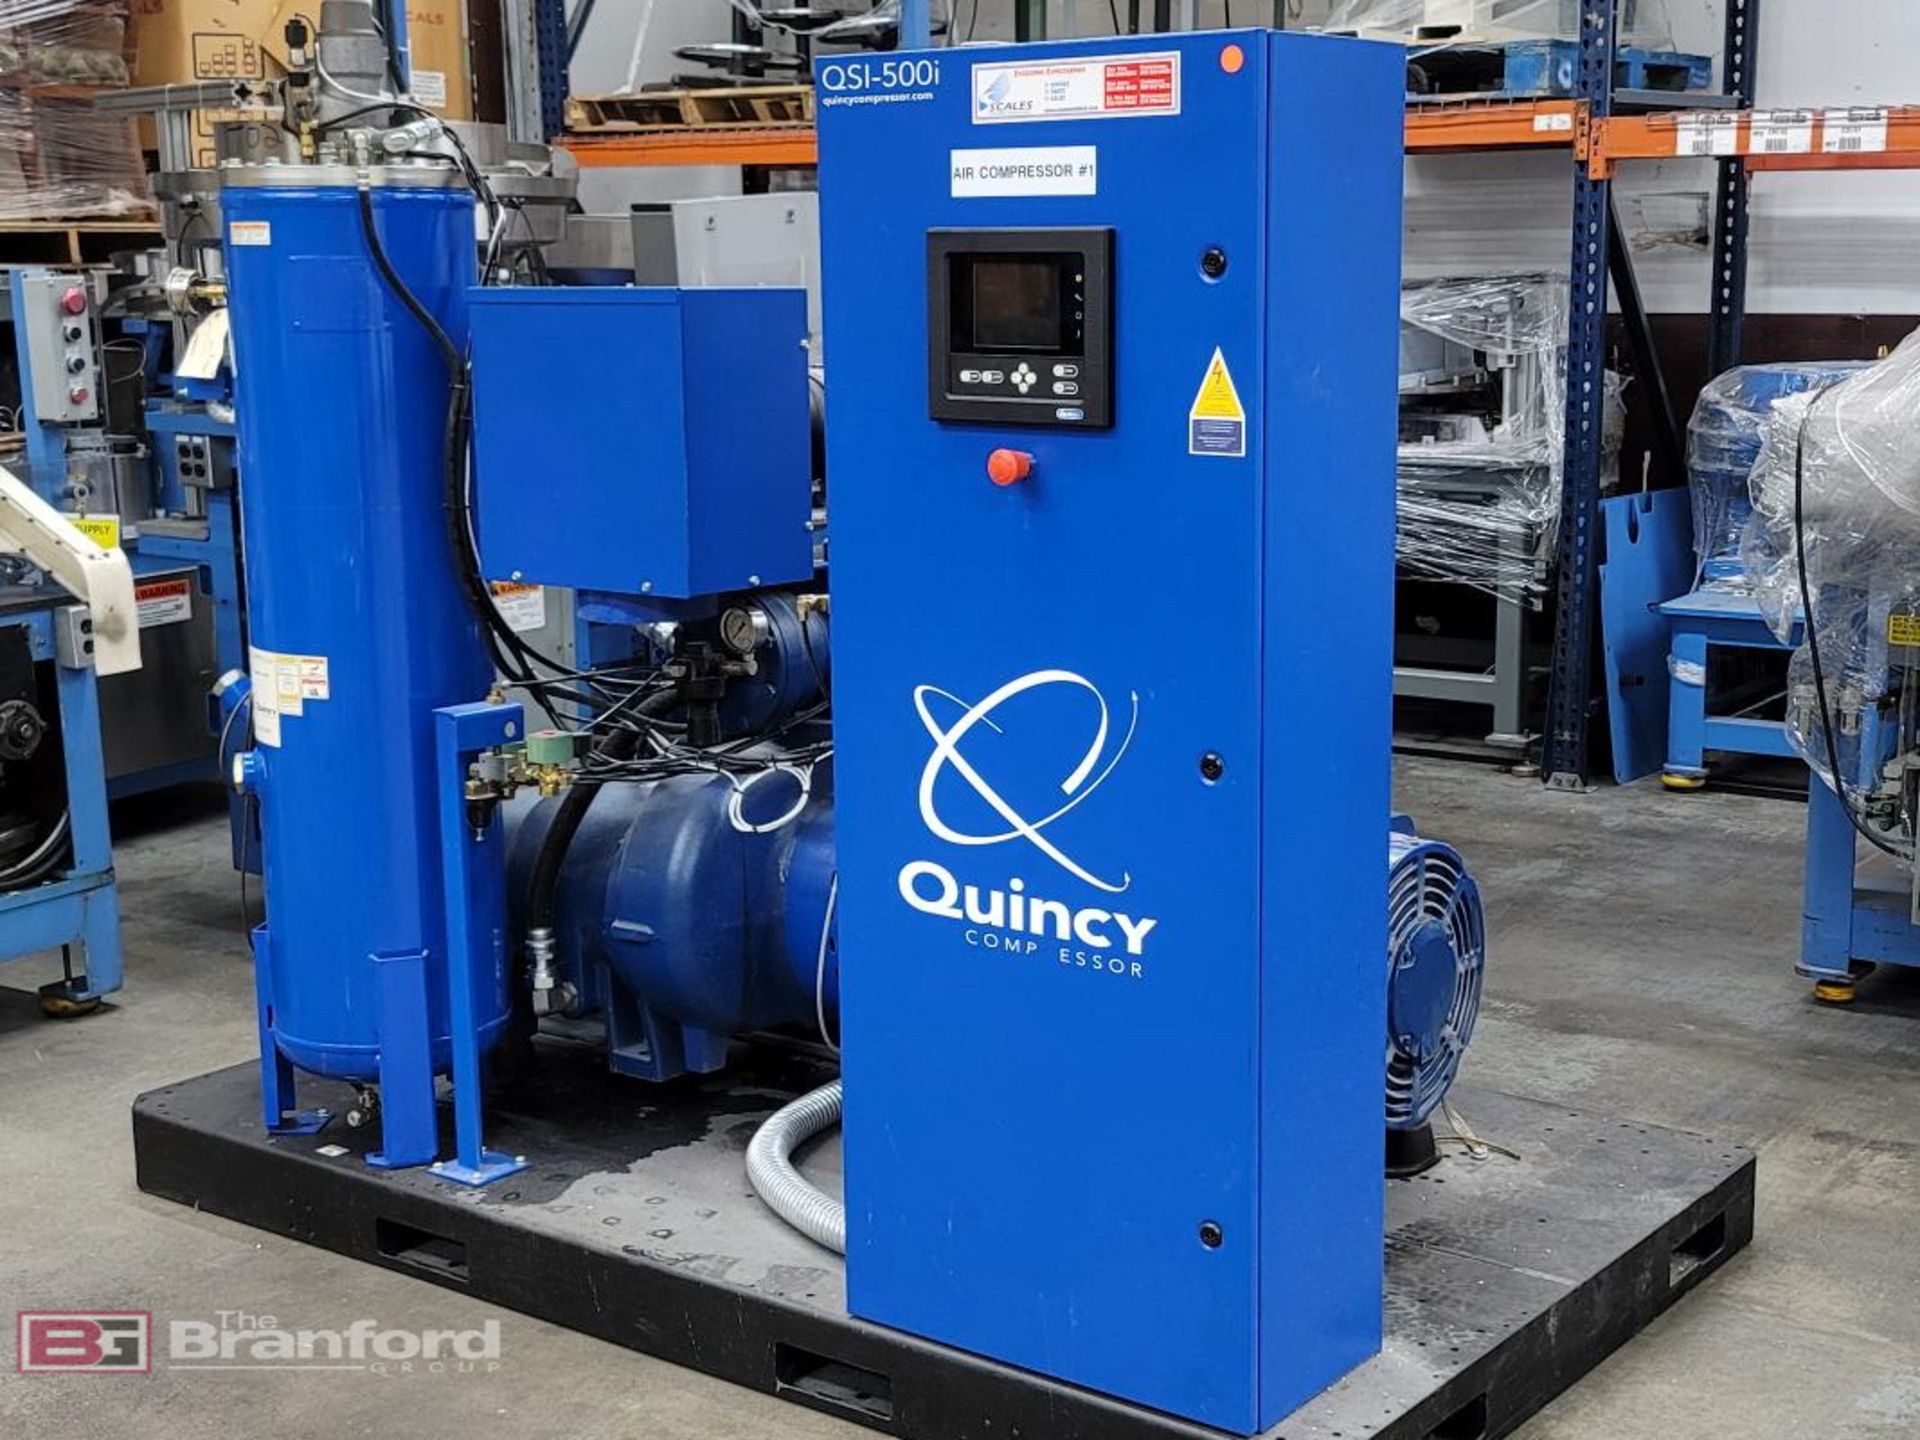 Quincy QSI-500i Air Compressor, (2018), 125-HP - Image 2 of 5